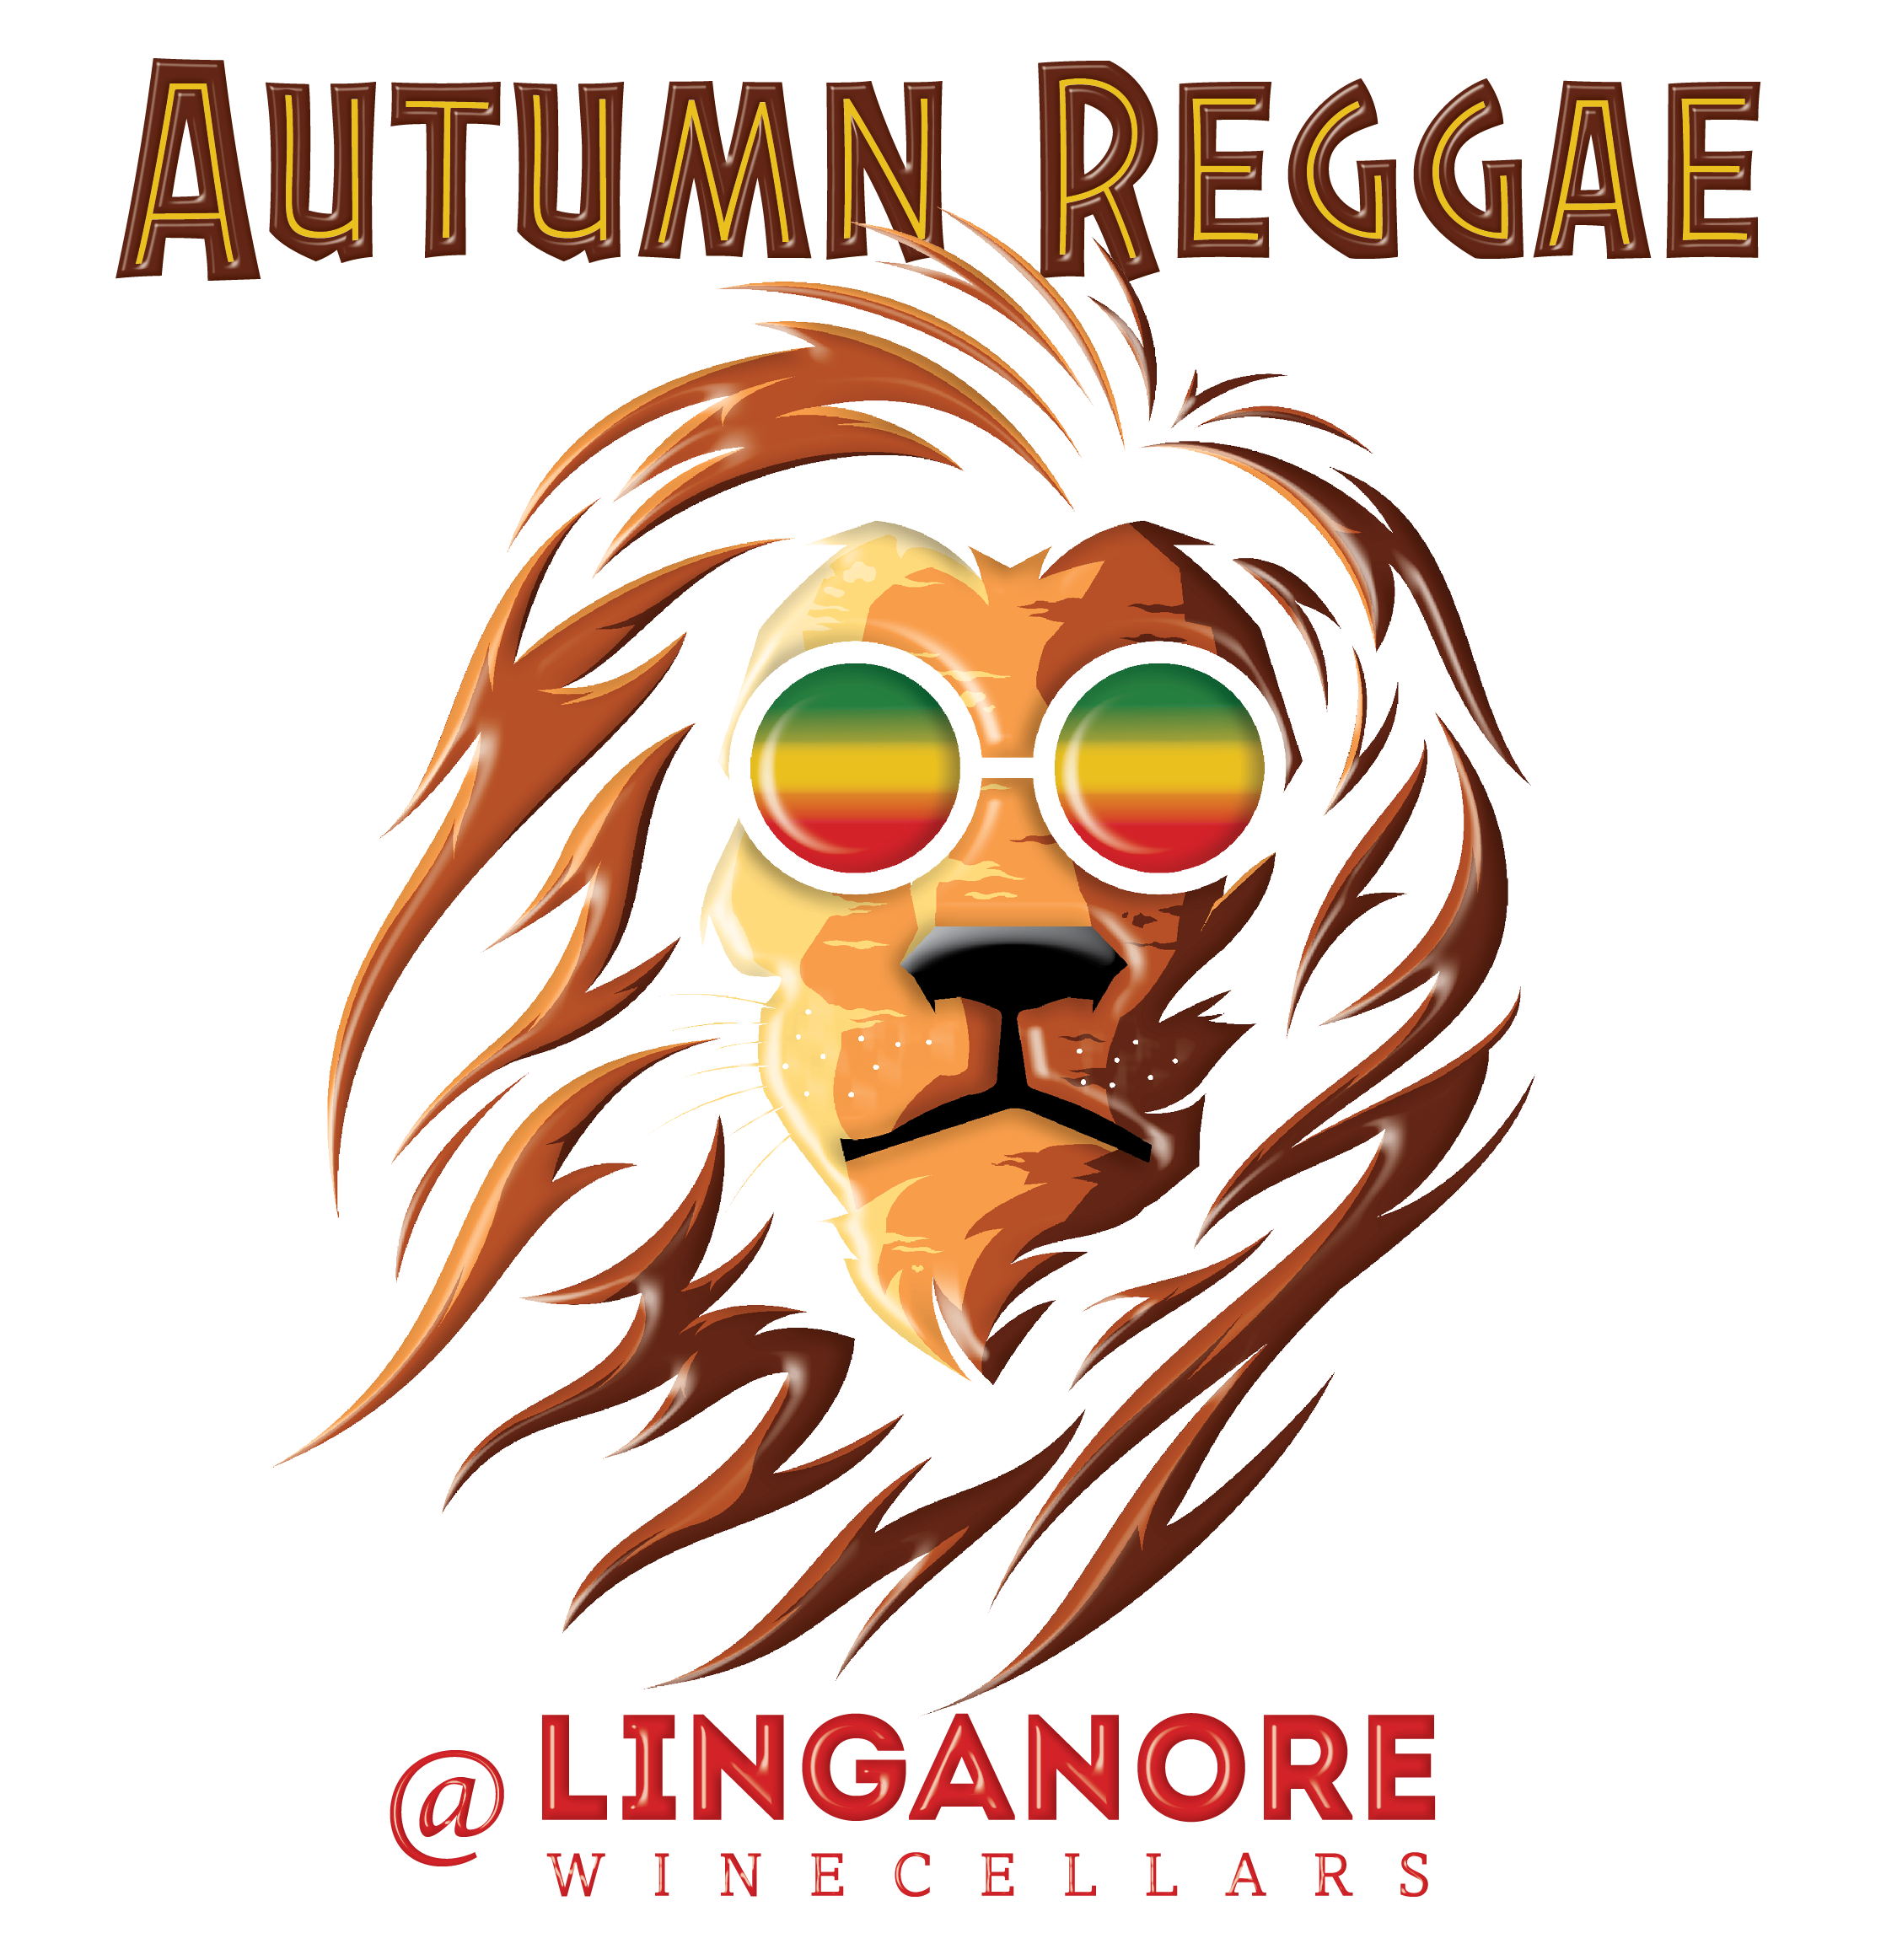 autumn reggae lion logo